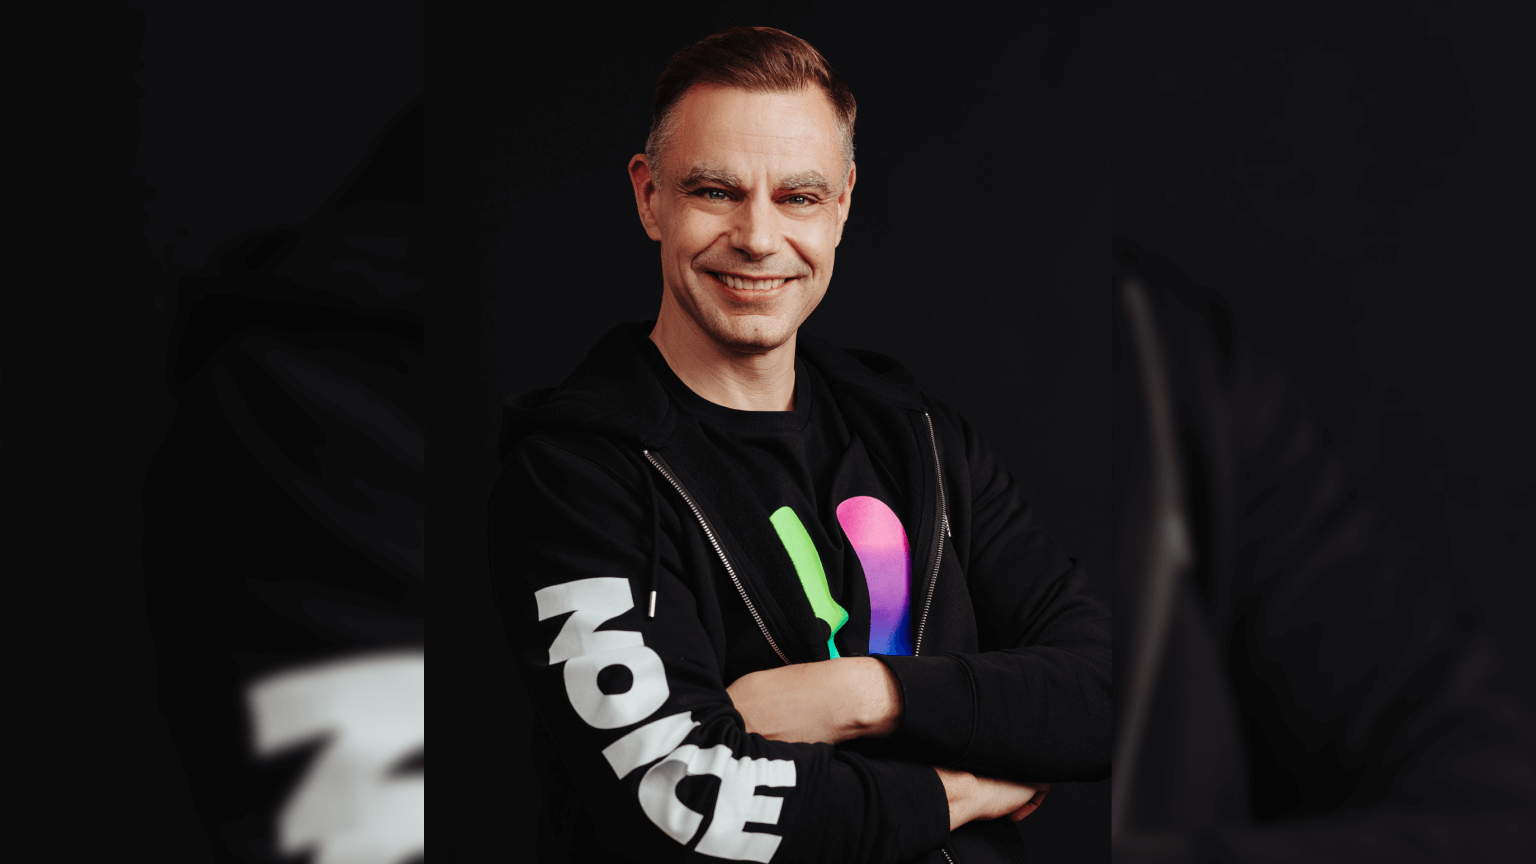 jussi laakkonen NOICE CEO founder title